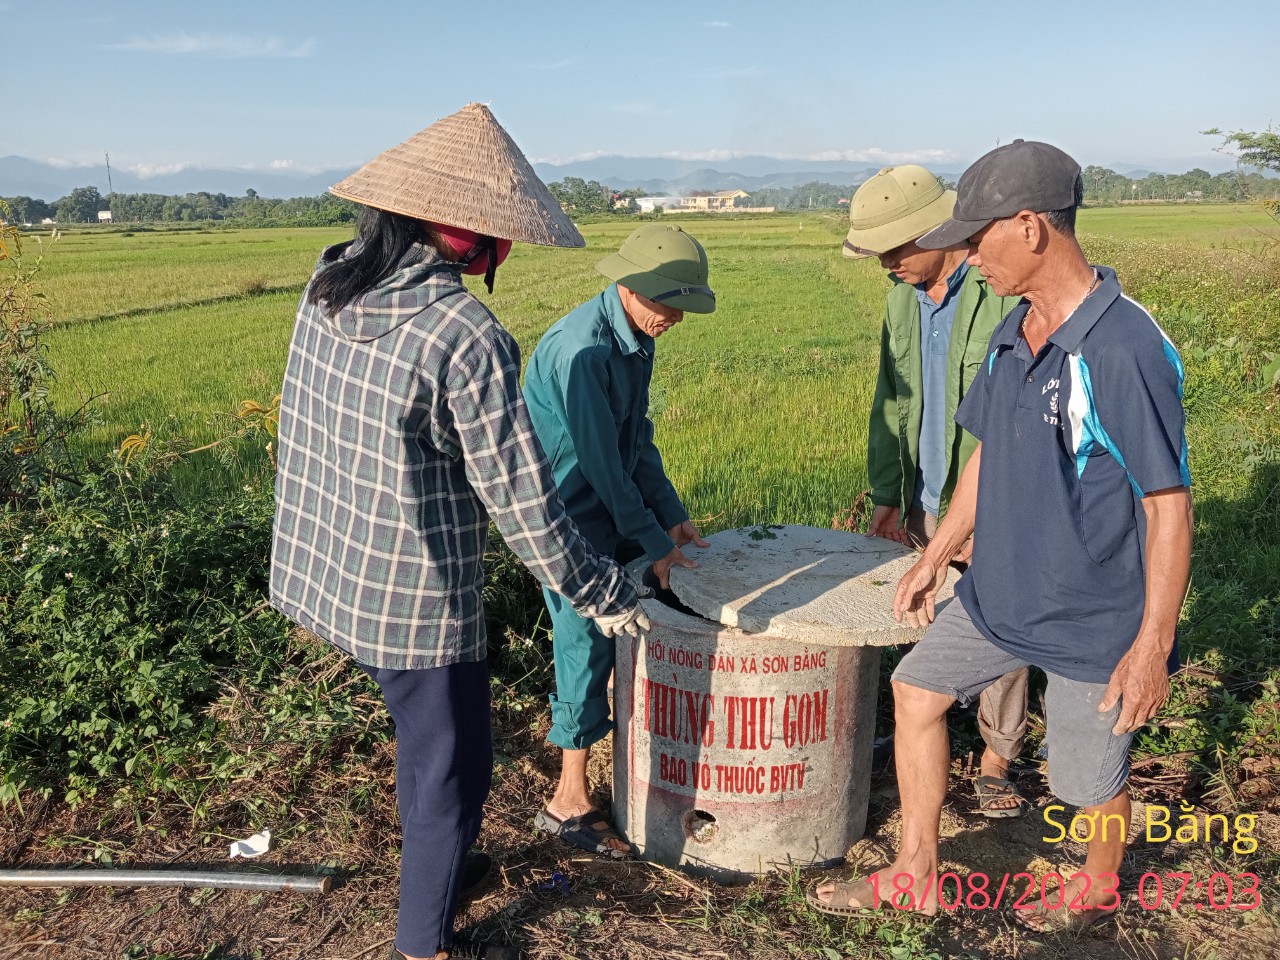 Vai trò của Hội Nông dân trong bảo vệ môi trường ở xã Sơn Bằng